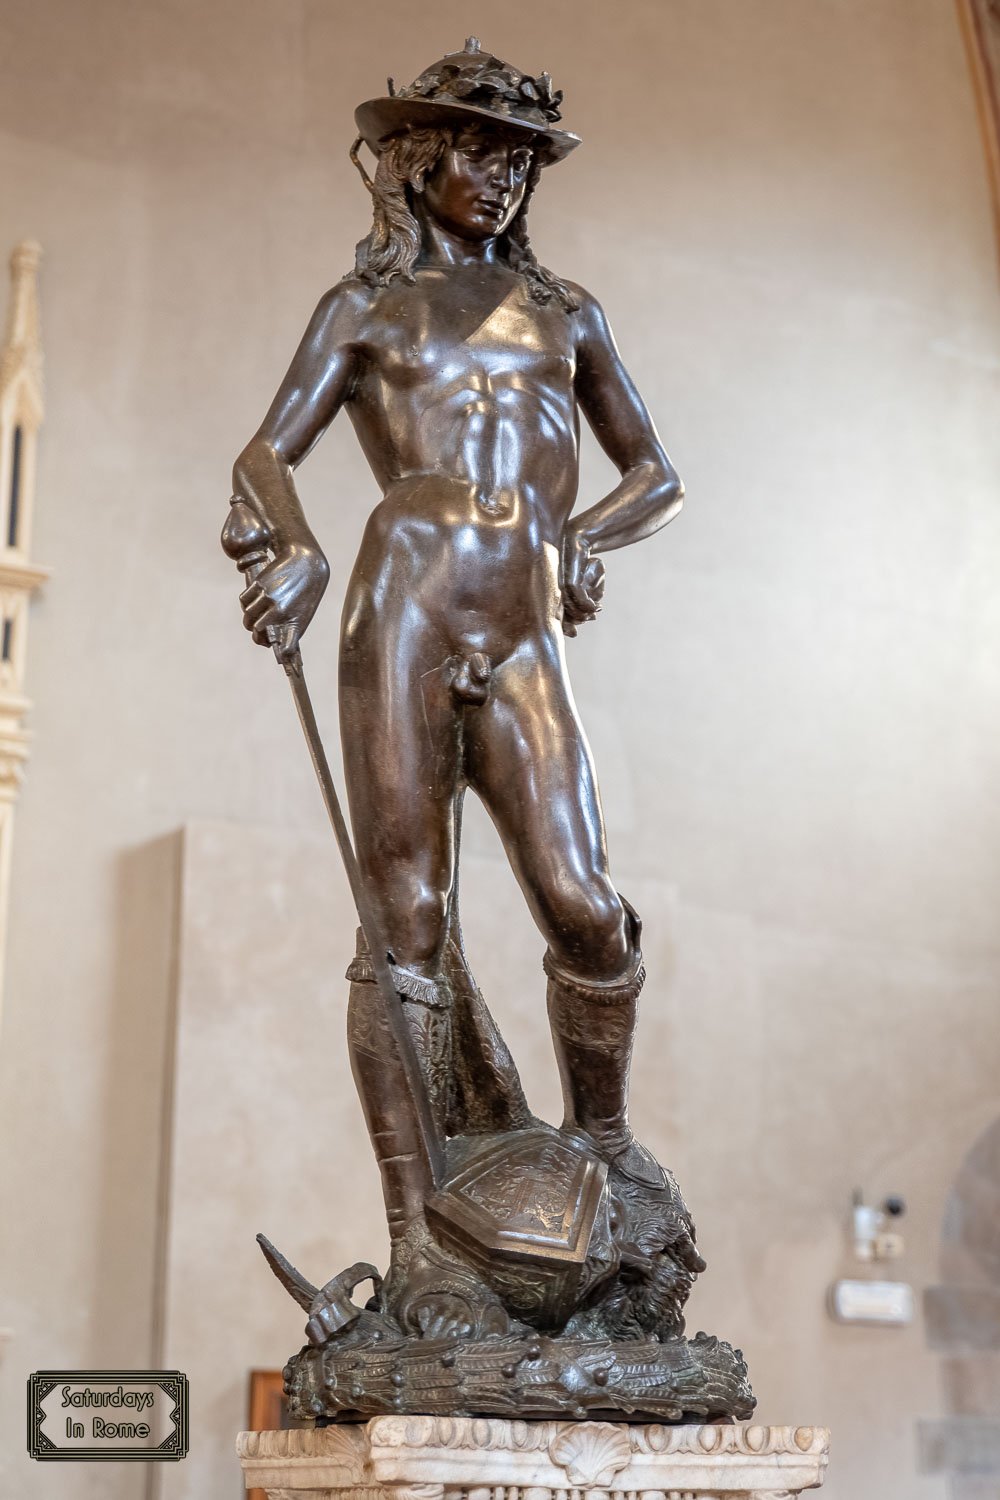 The Bargello Museum In Florence - Donatello's David